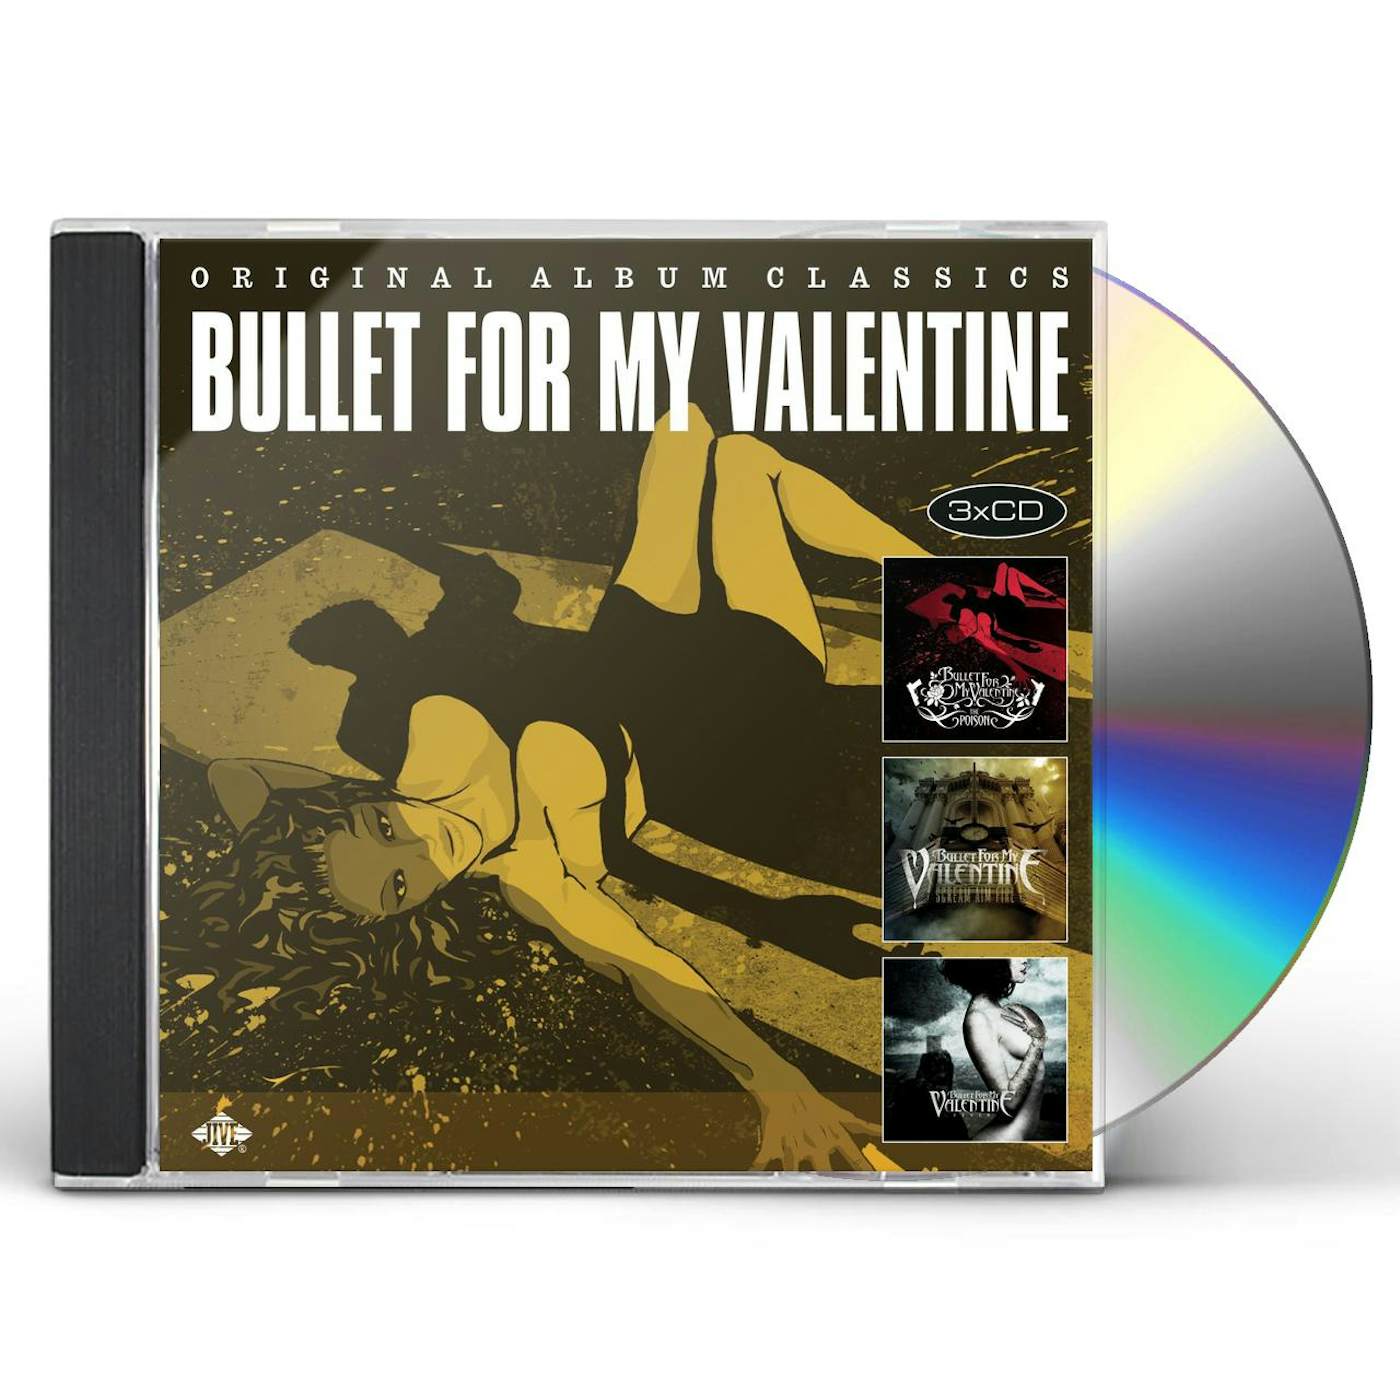 Bullet For My Valentine ORIGINAL ALBUM CLASSICS CD